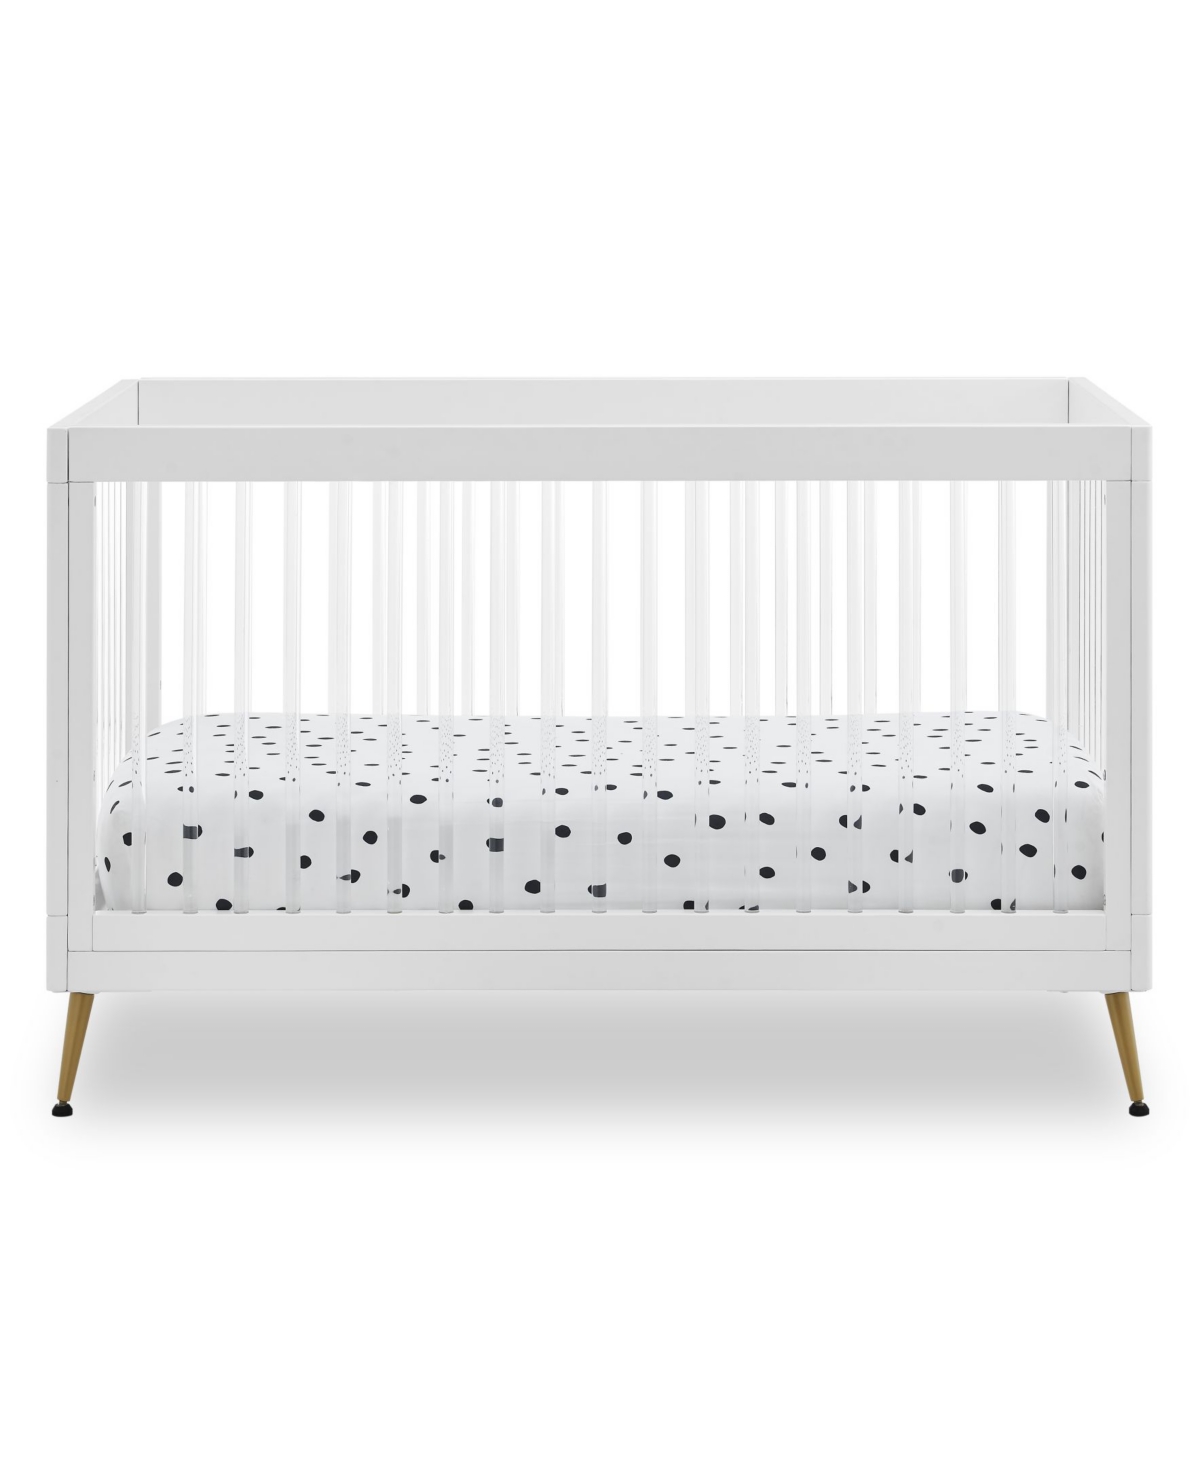 Delta Children Sloane 4-In-1 Acrylic Convertible Crib - Includes Conversion Rails